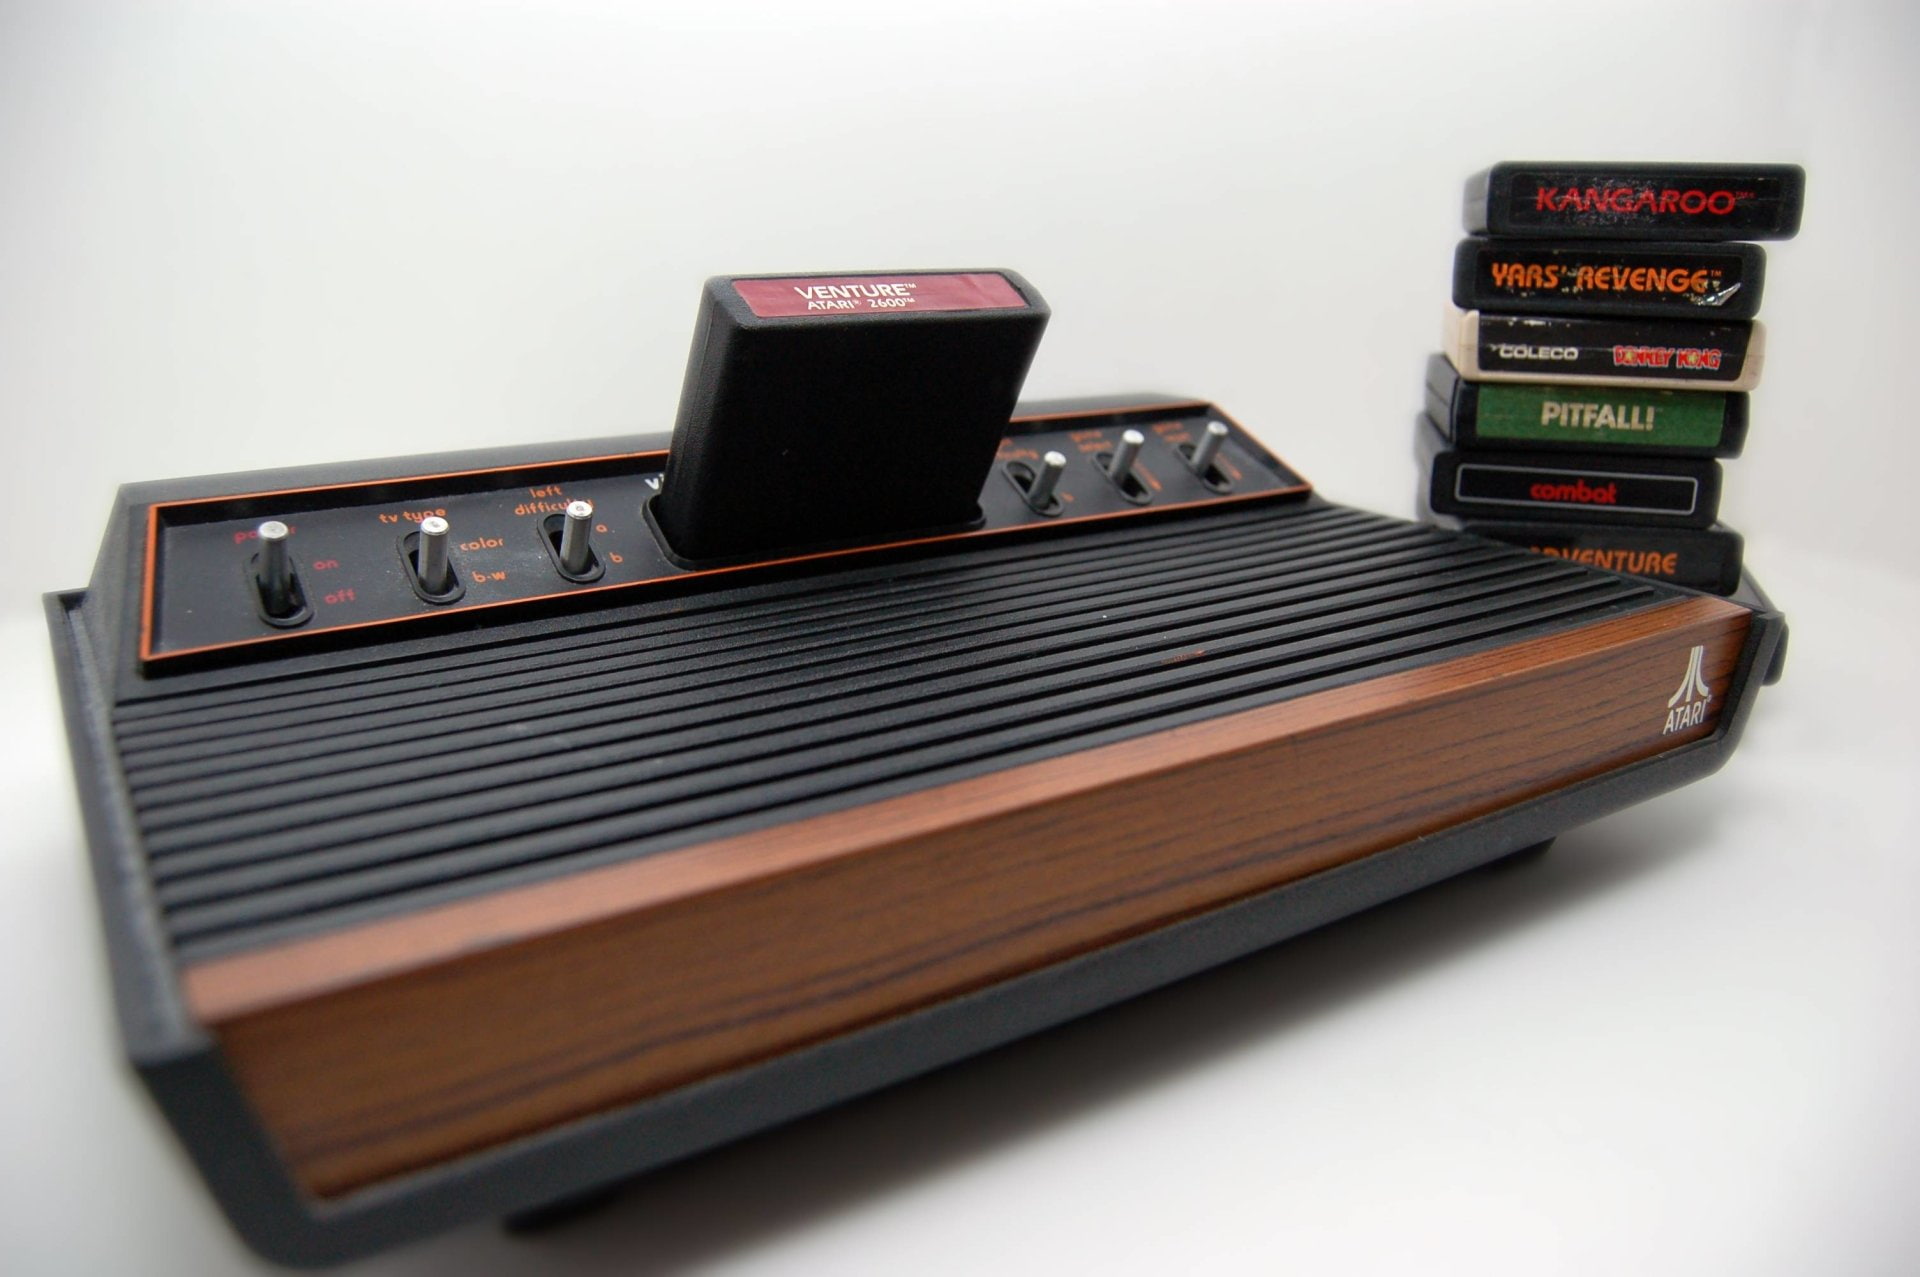 Video Game, Atari 2600